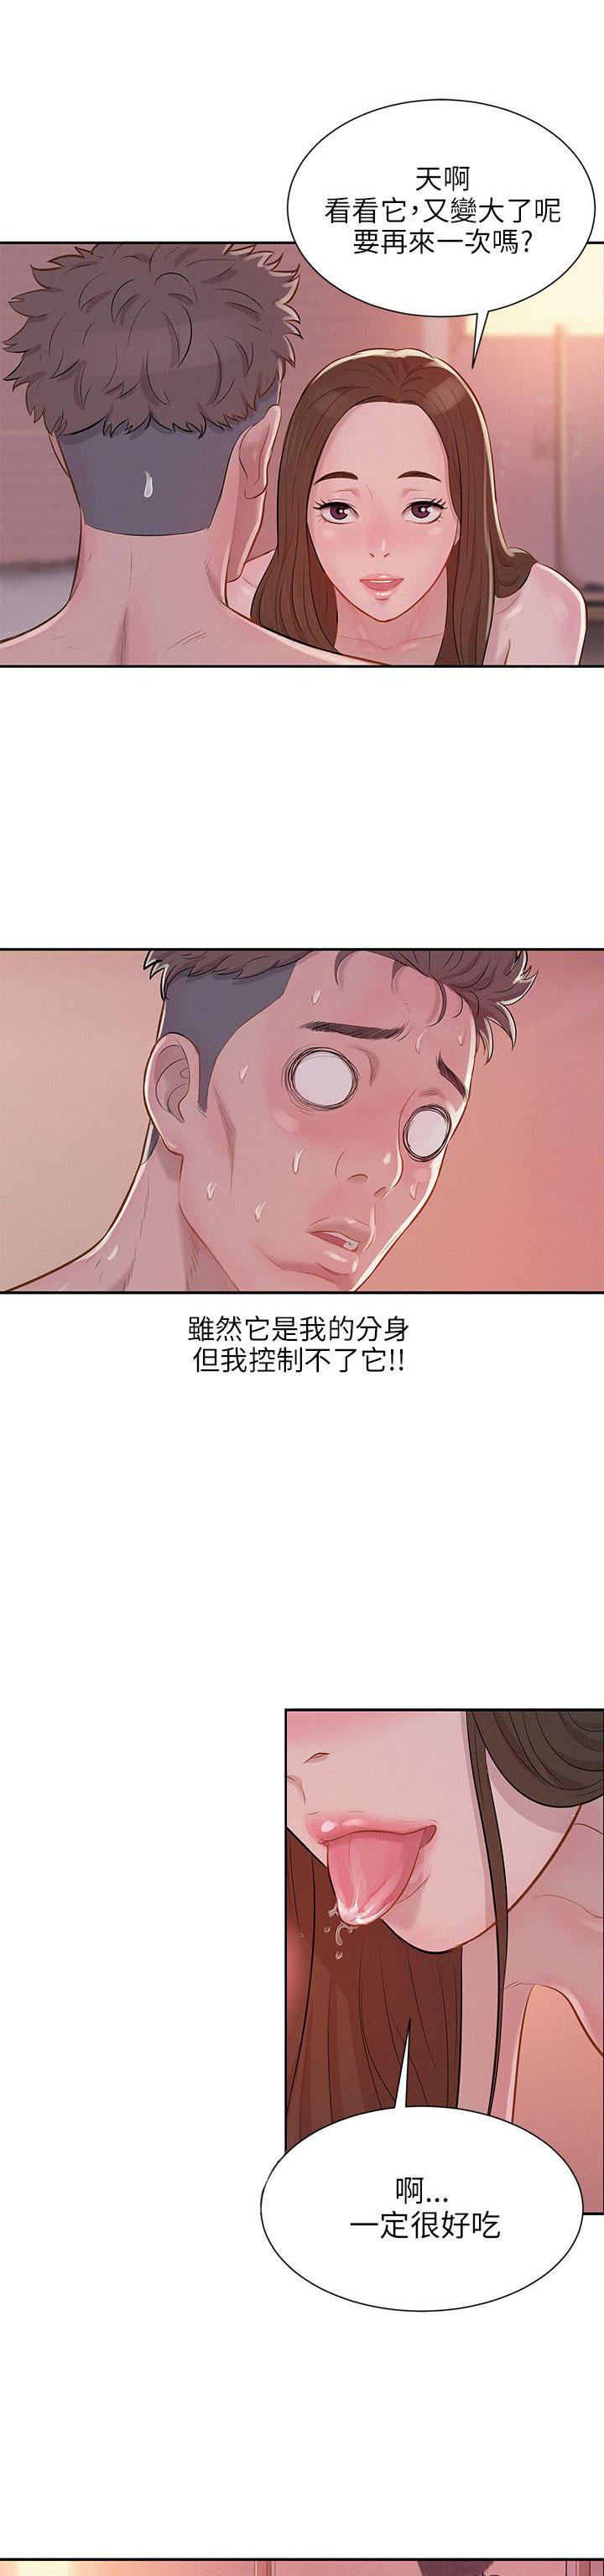 韩国污漫画 新生日記 第5话果断出手 3